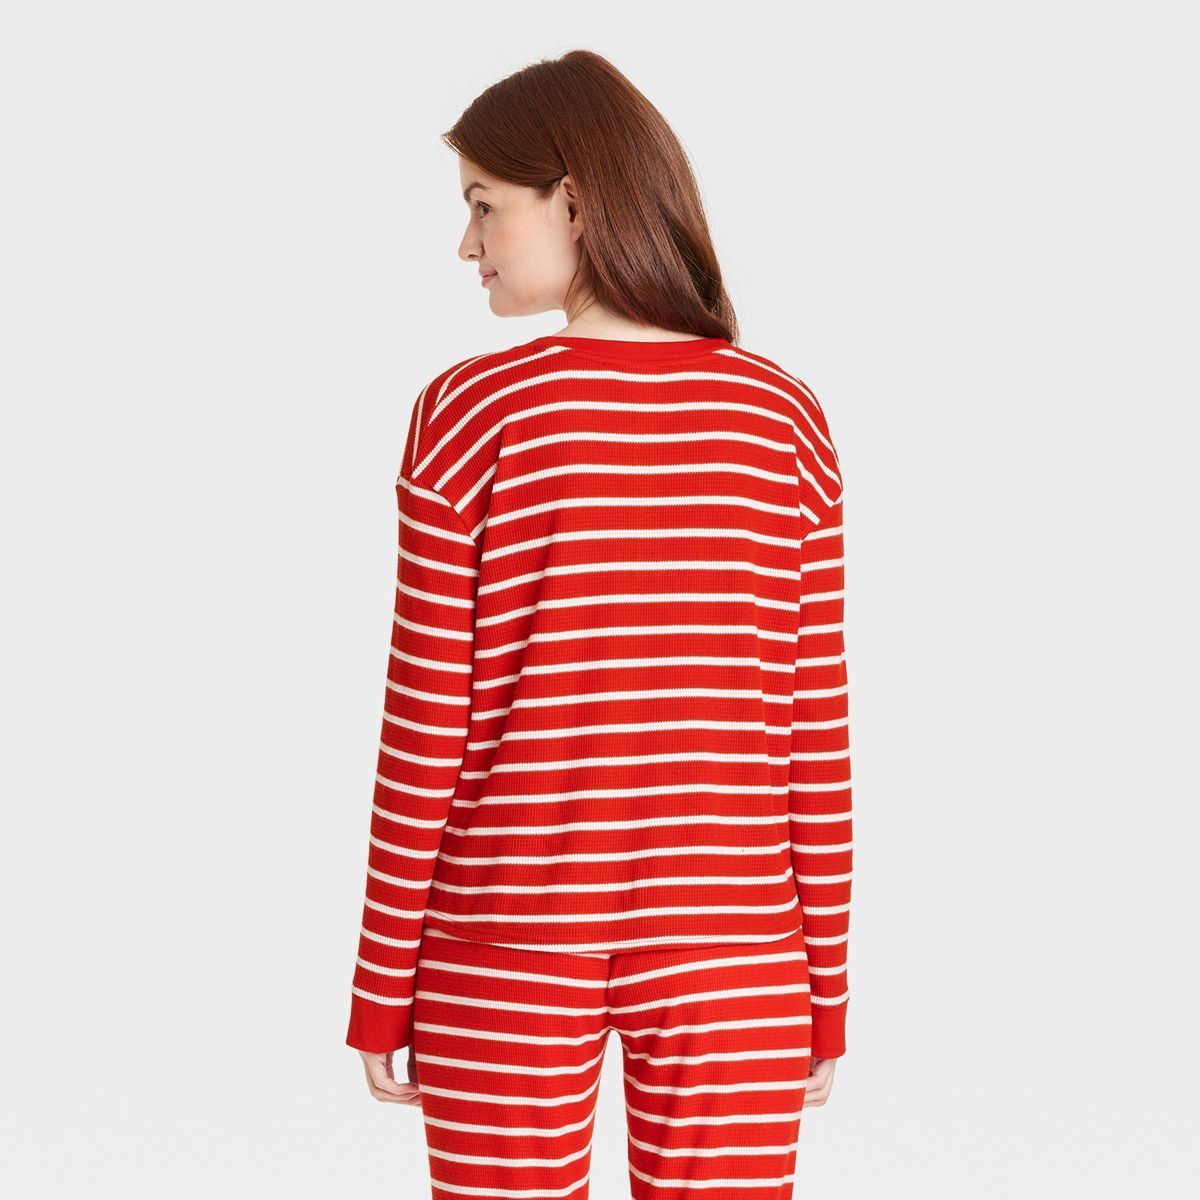 Women's Striped Matching Family Thermal Pajama Top - Wondershop™ Red | Target